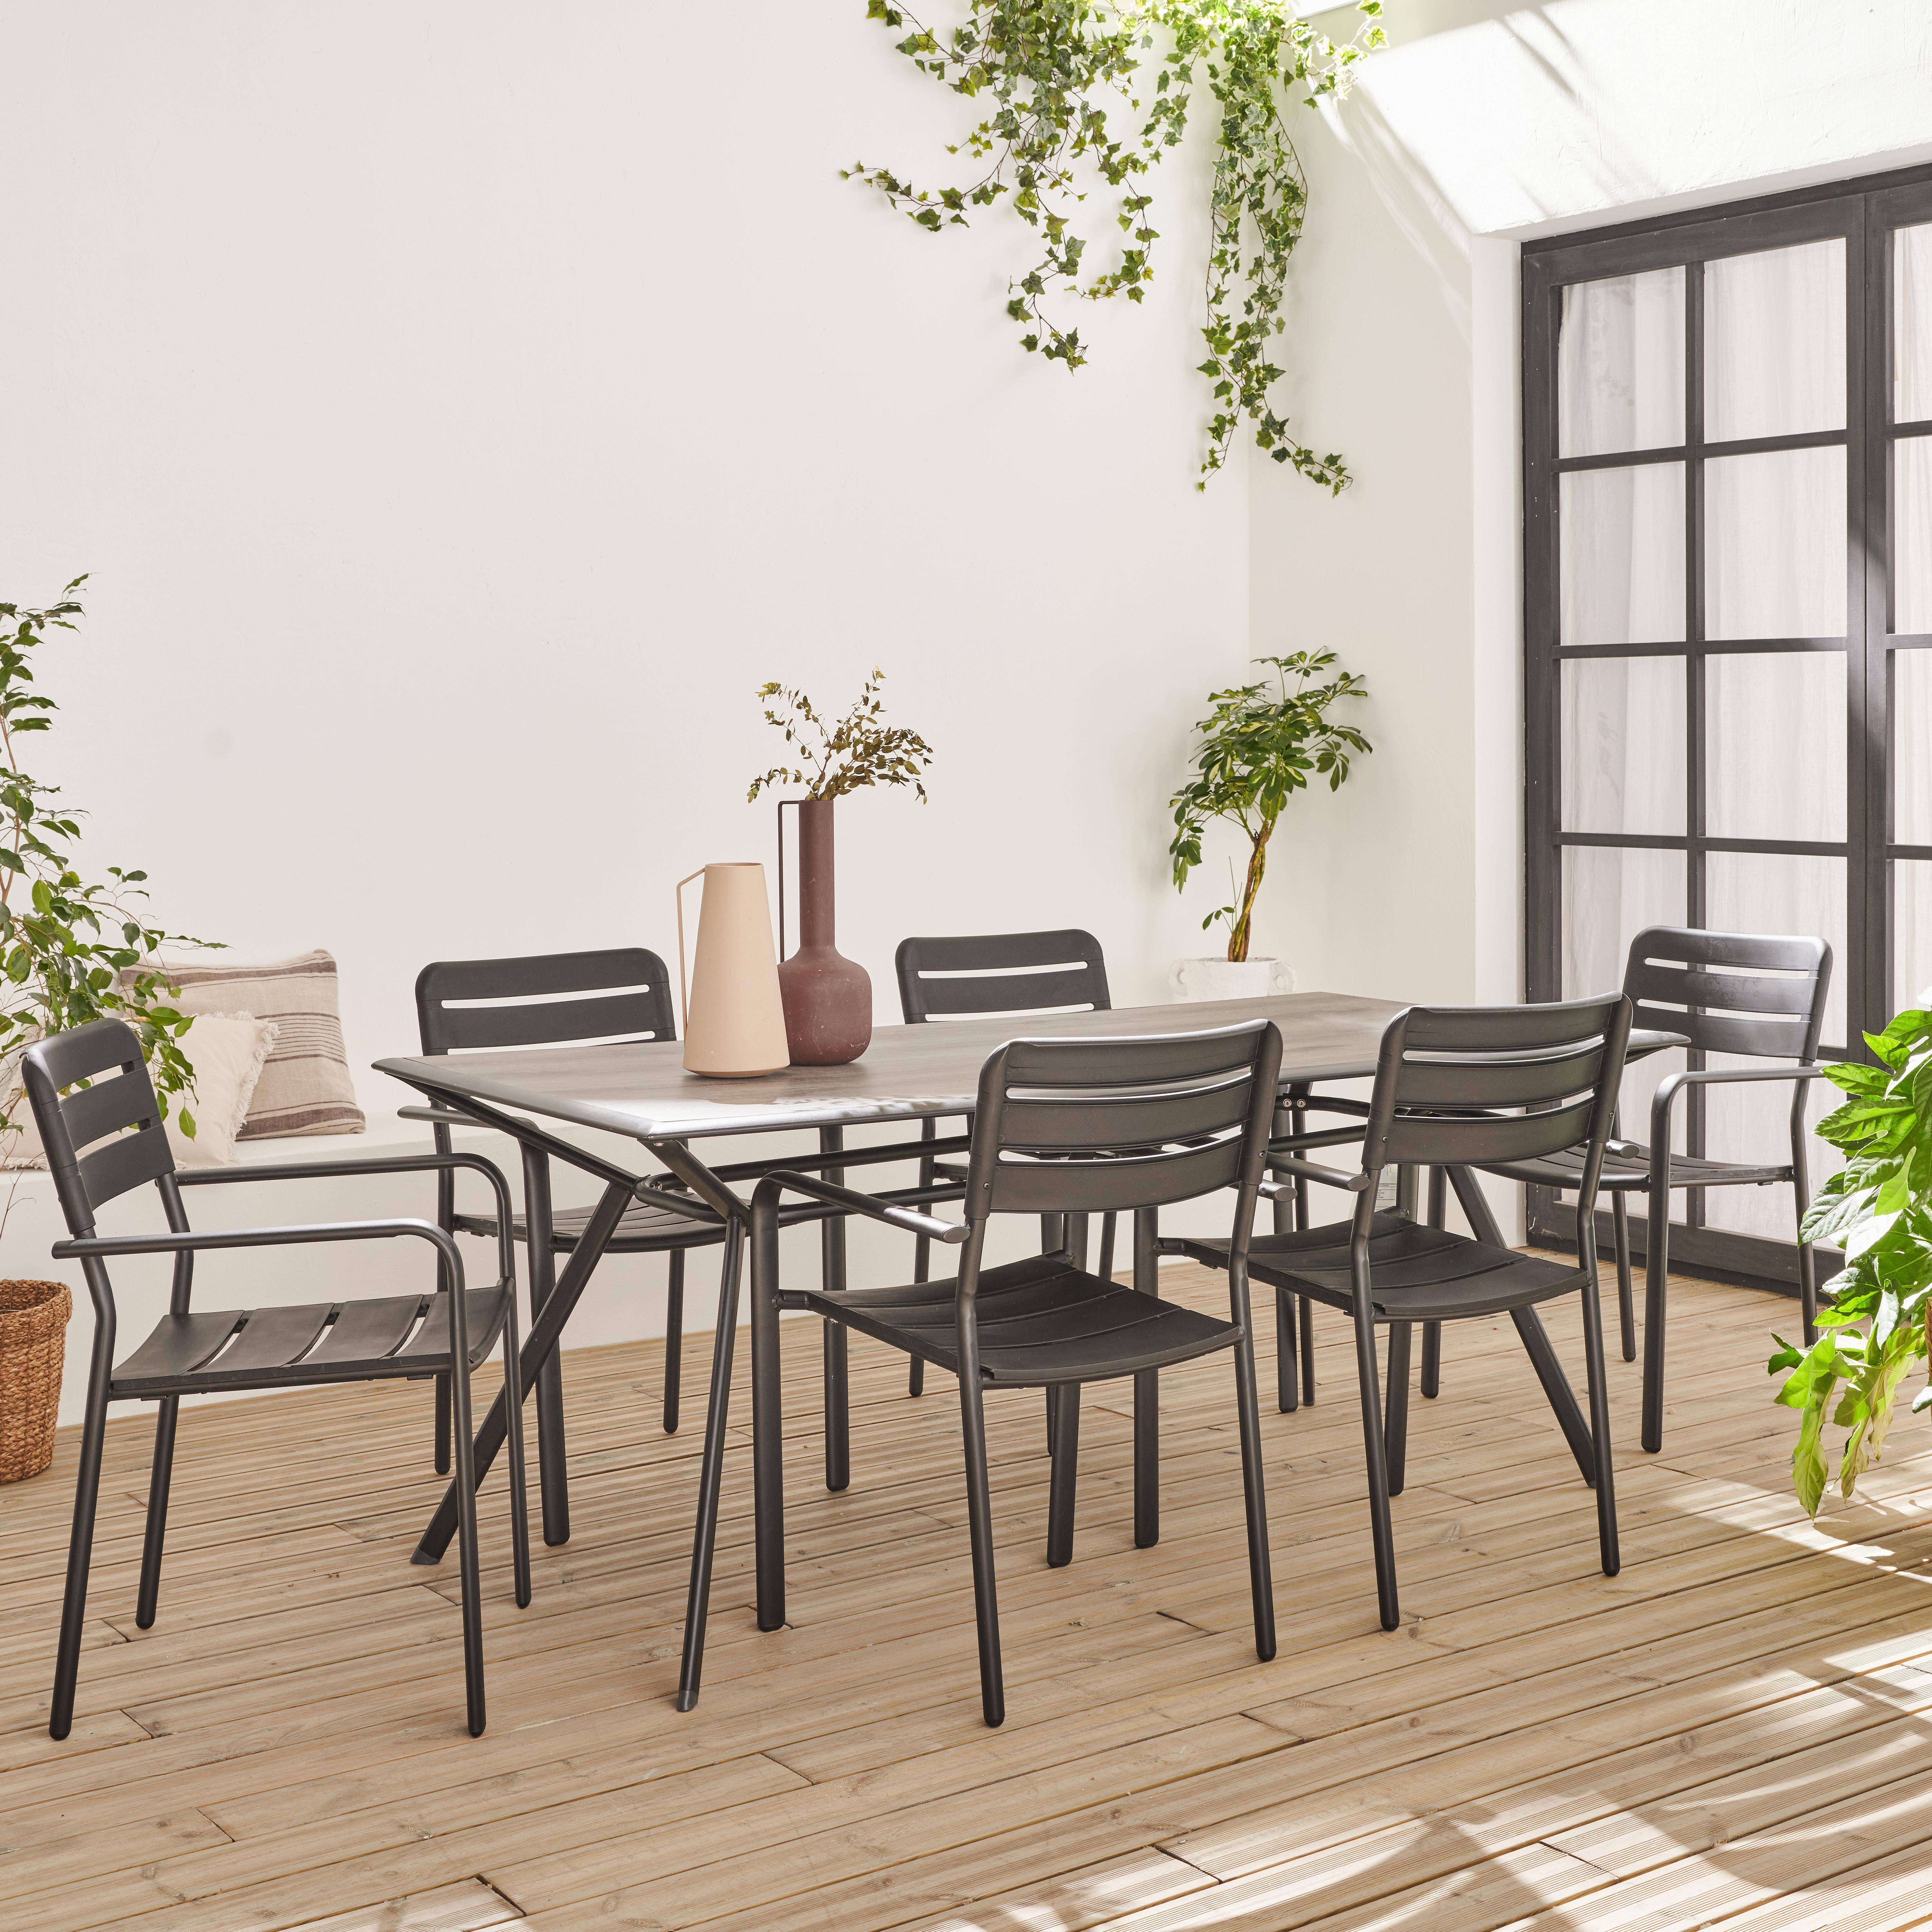 Table de jardin longueur 180cm plateau effet bois structure acier avec 6 chaises en acier incluses ,sweeek,Photo1